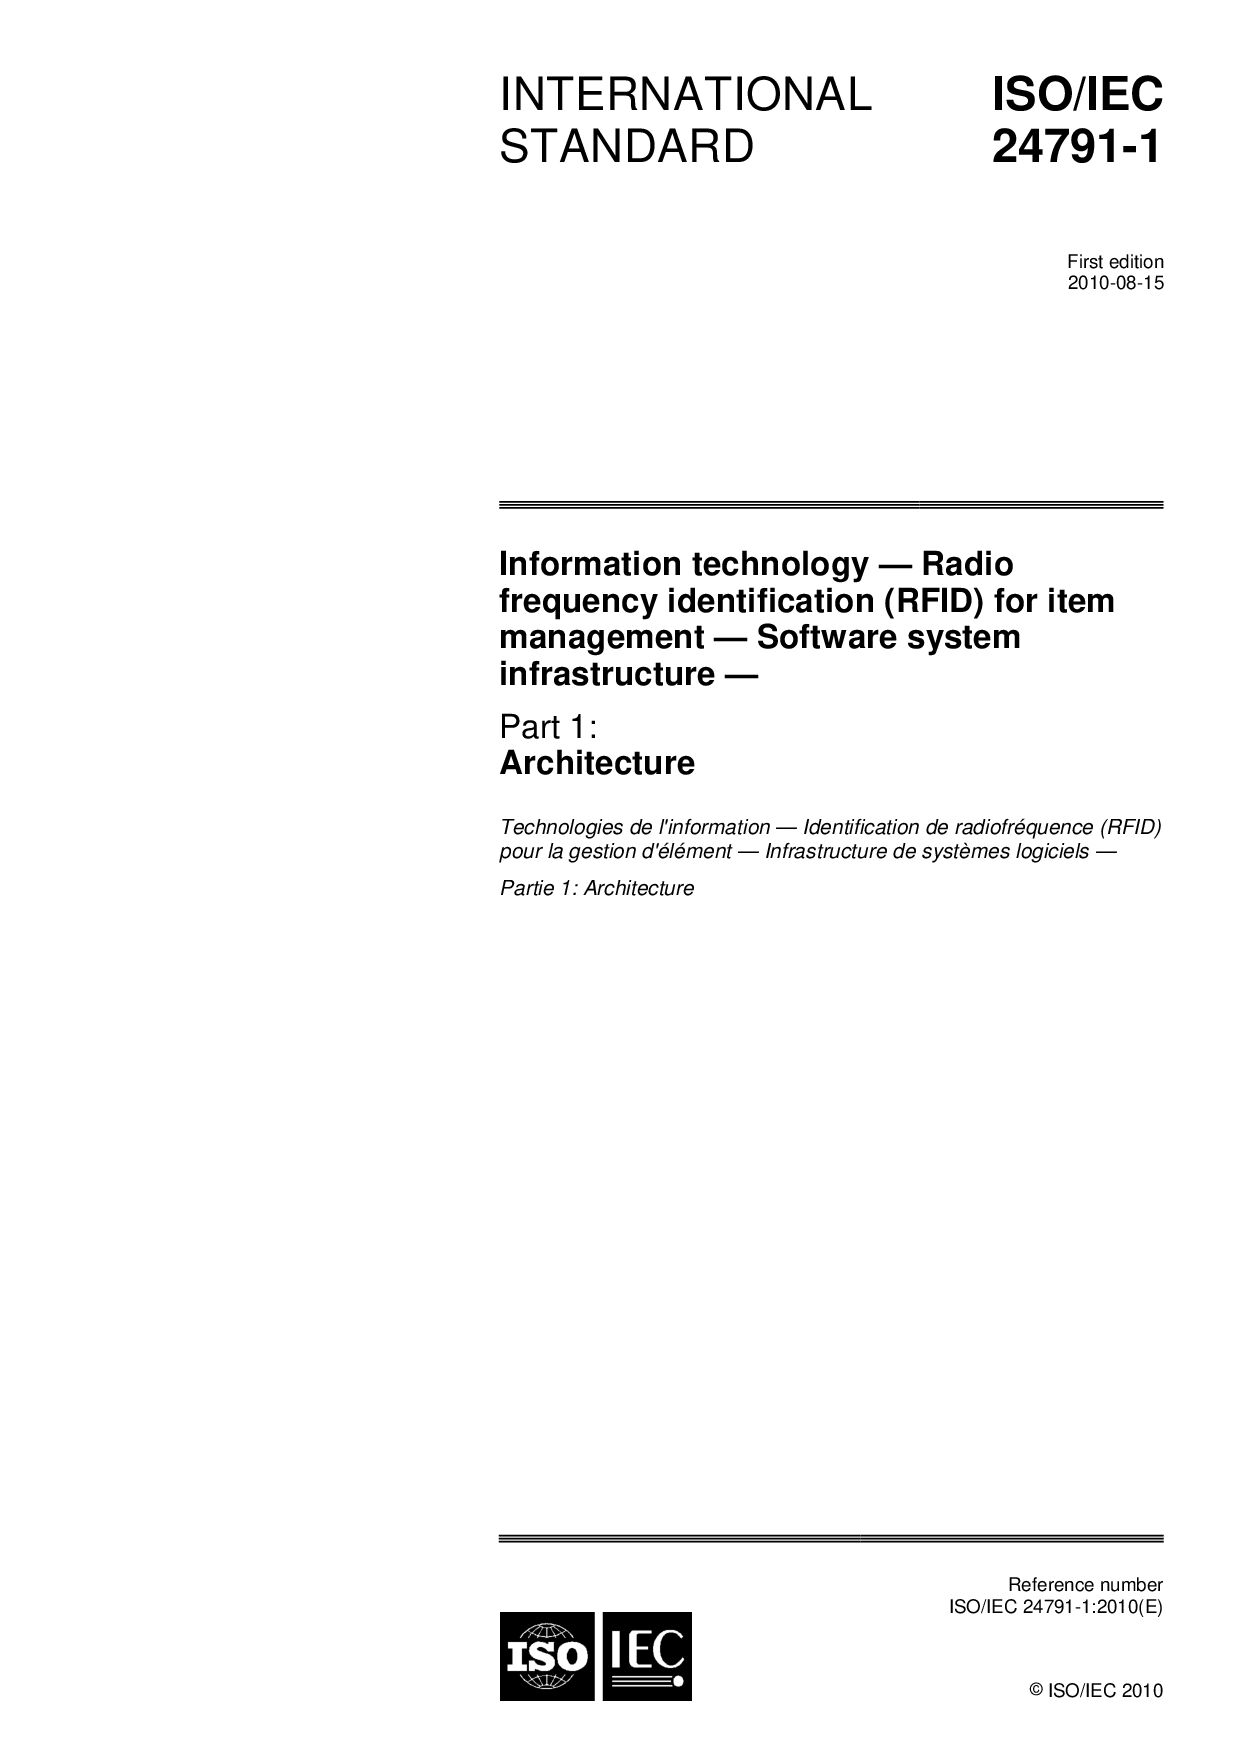 ISO/IEC 24791-1:2010封面图